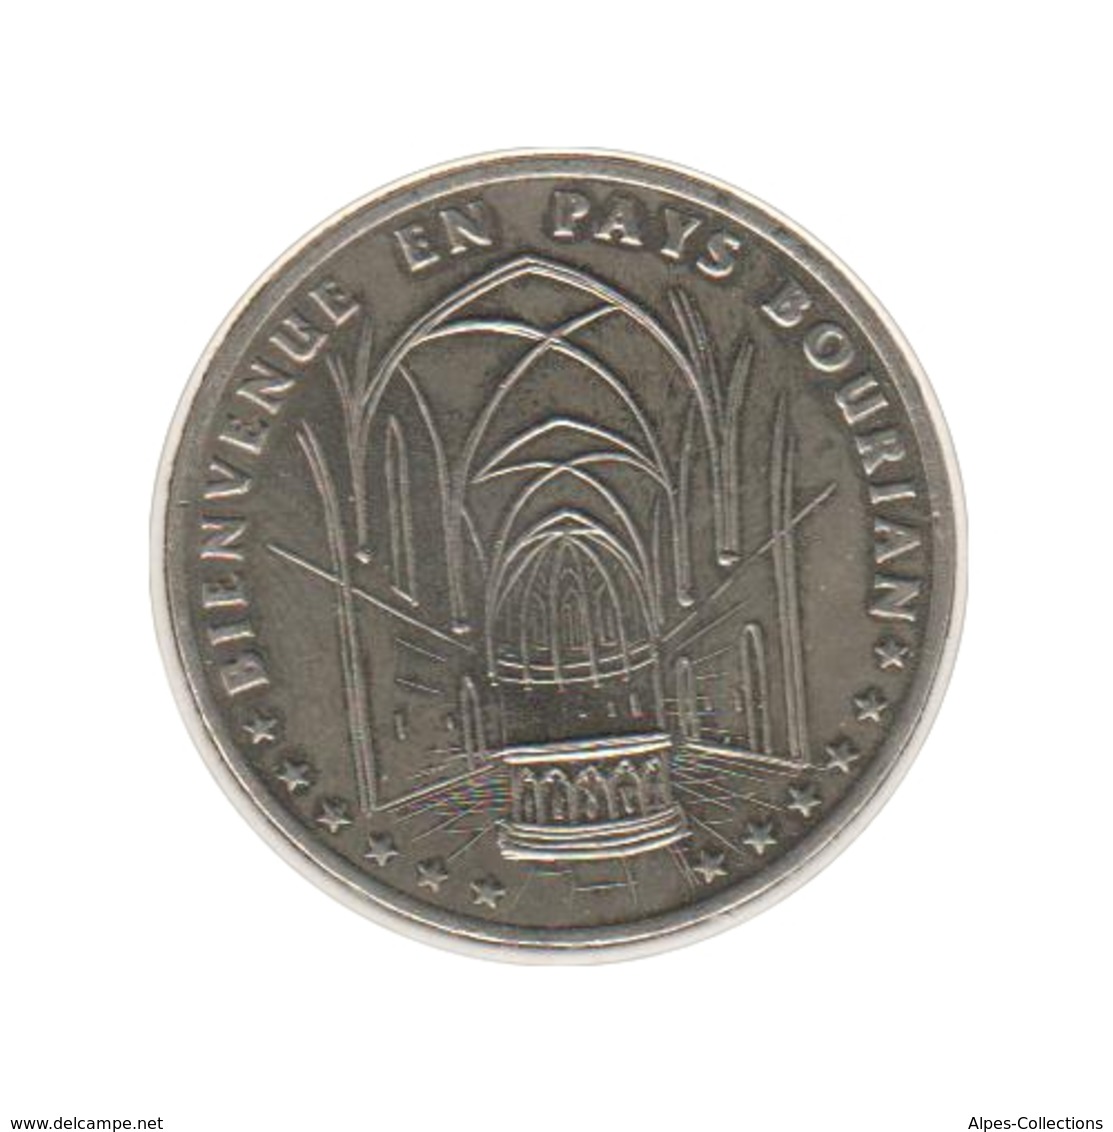 GOURDON - EC0030.1 - 3 ECU DES VILLES - Réf: T63 - 1995 - Euros Of The Cities